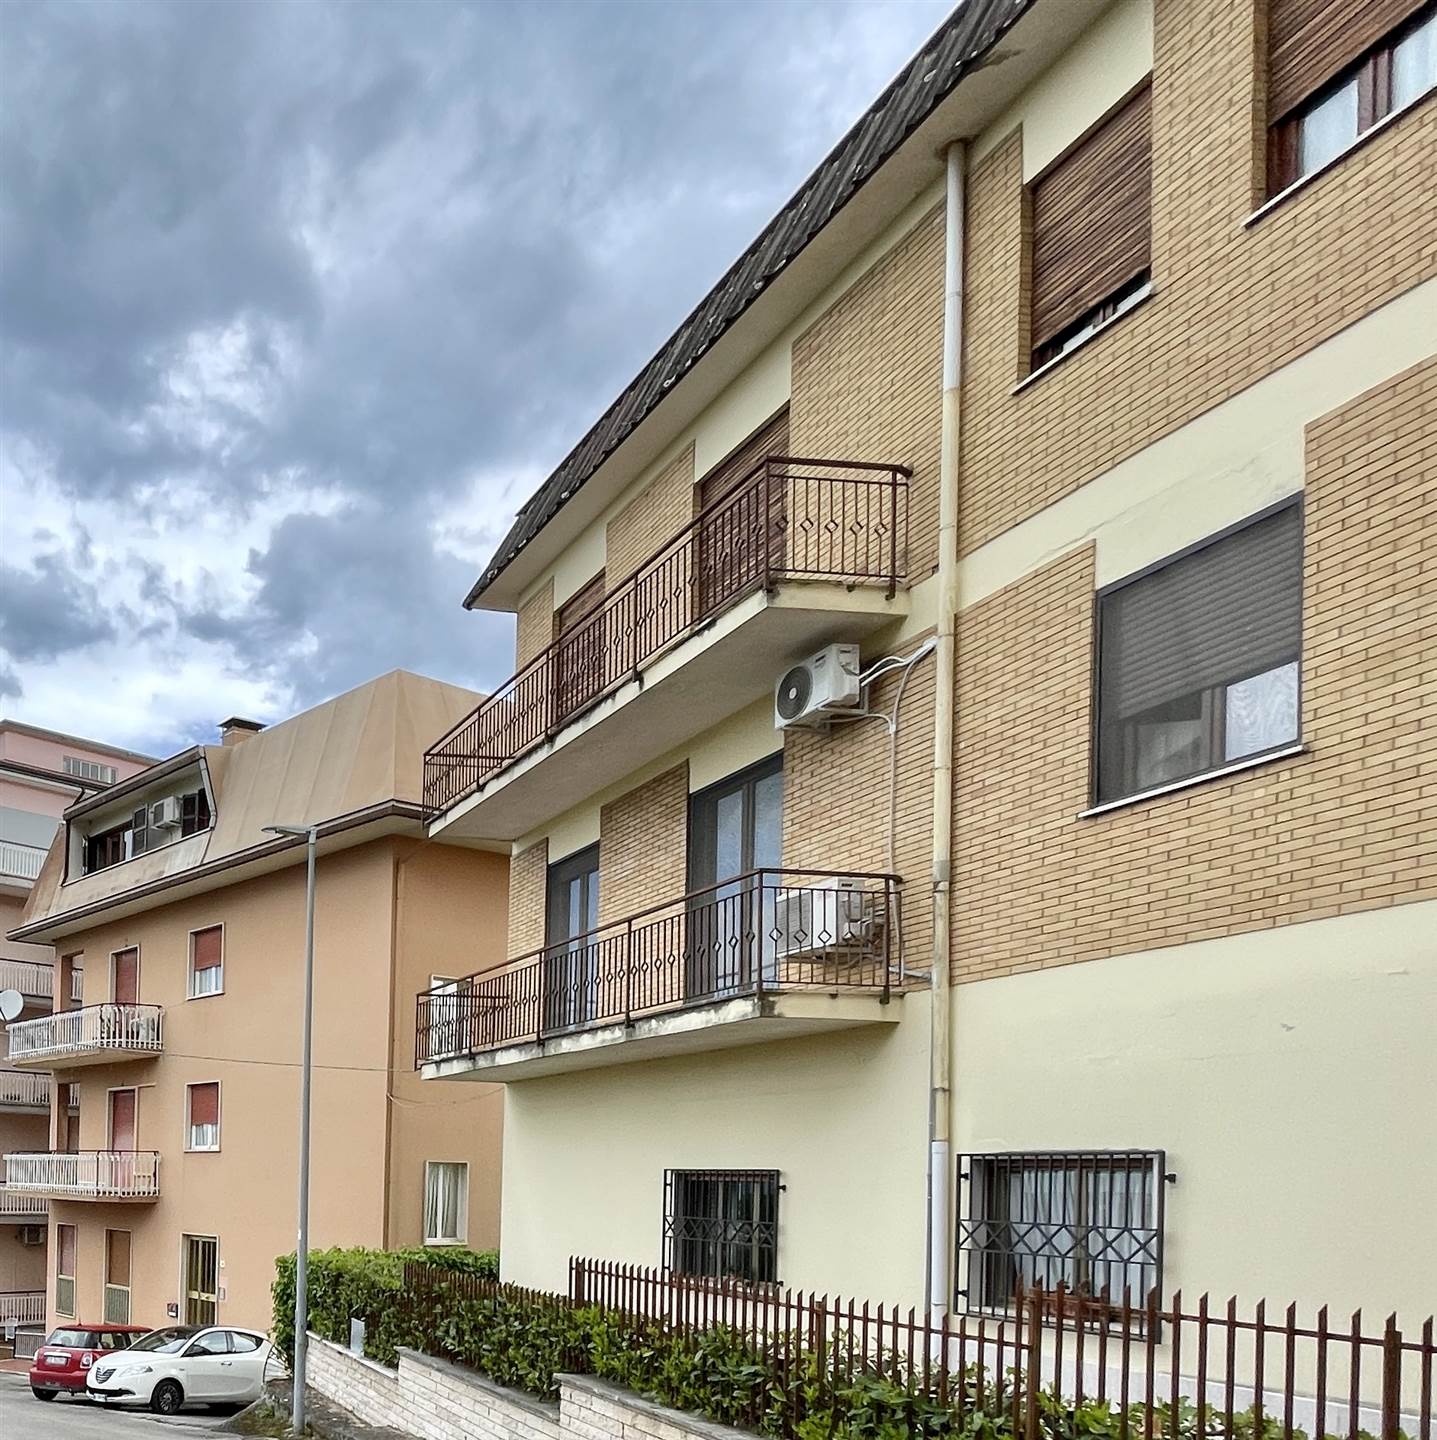 Appartamento in affitto a Frosinone, 6 locali, zona Località: FROSINONE ALTA, prezzo € 750 | PortaleAgenzieImmobiliari.it